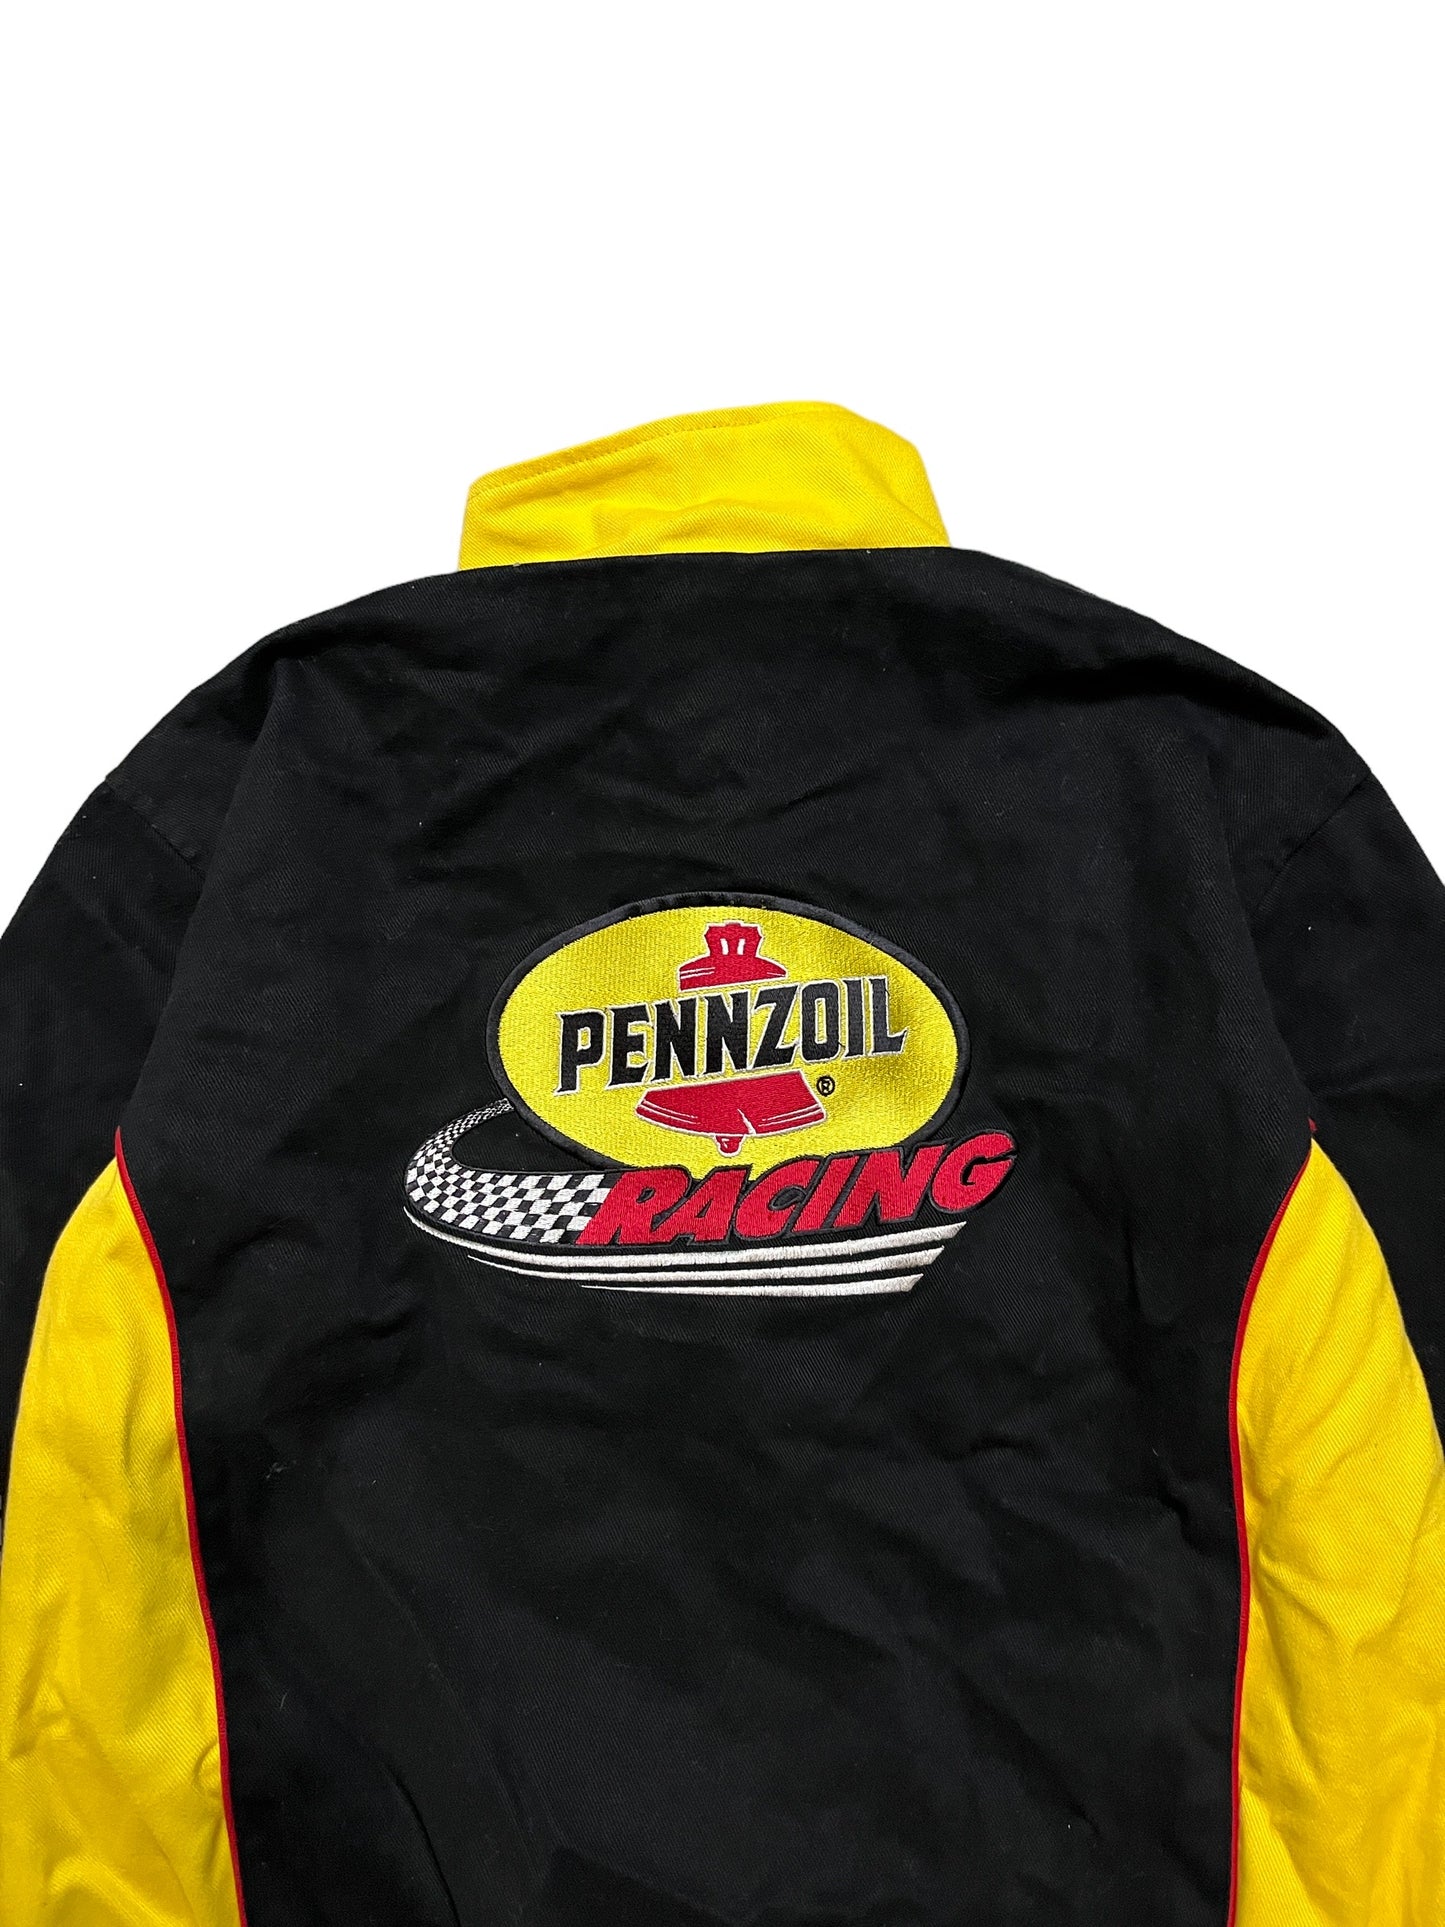 Vintage Pennzoil Racing Jacket